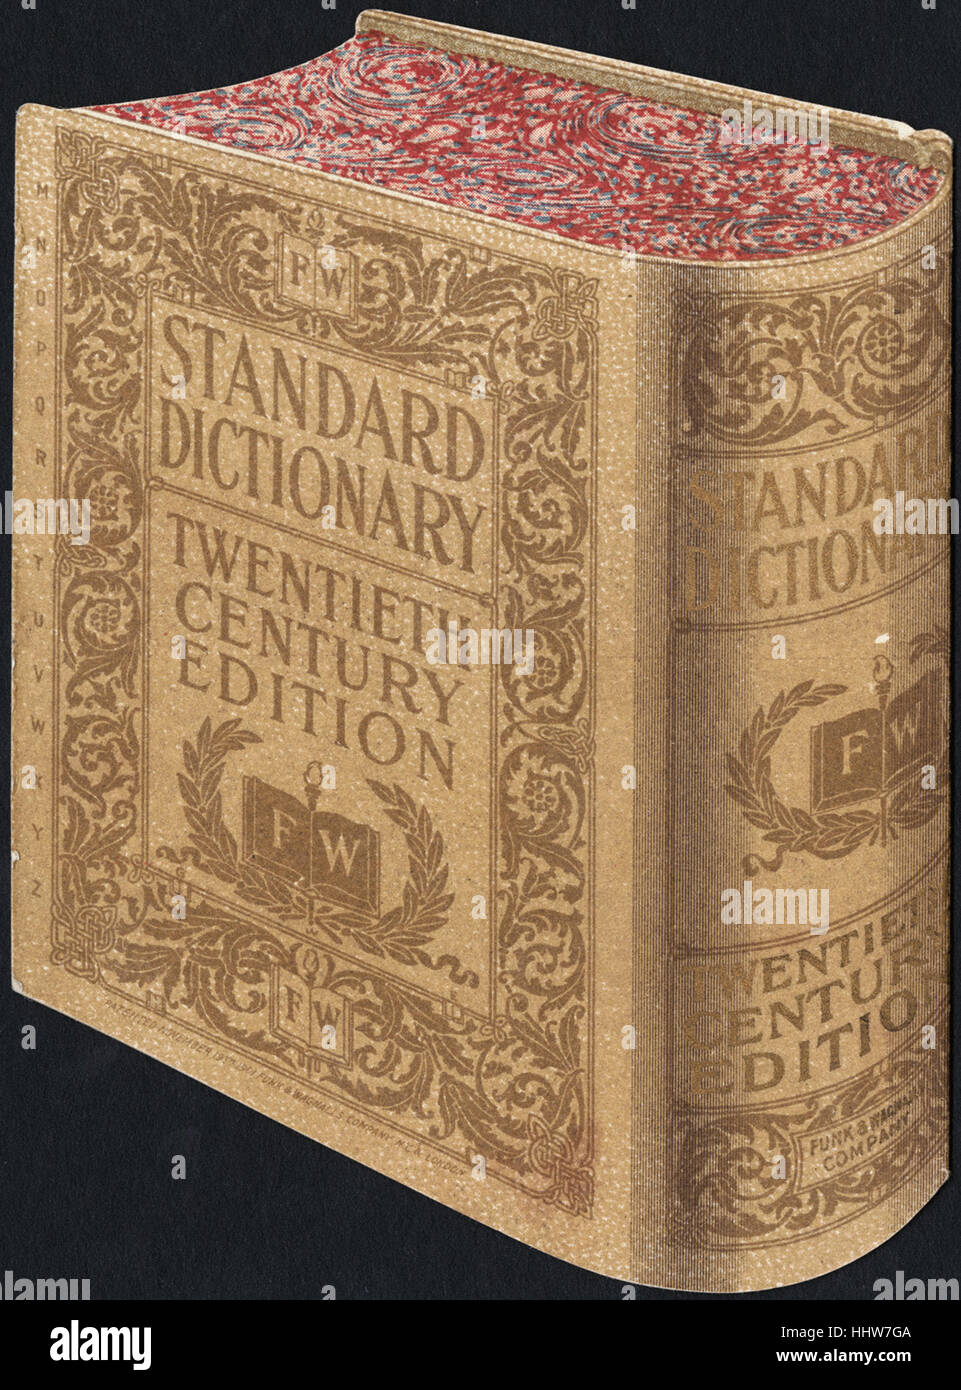 Standardwörterbuch, Ausgabe des zwanzigsten Jahrhunderts. [zurück] - Freizeit, Lesung und Travel Trade Cards Stockfoto